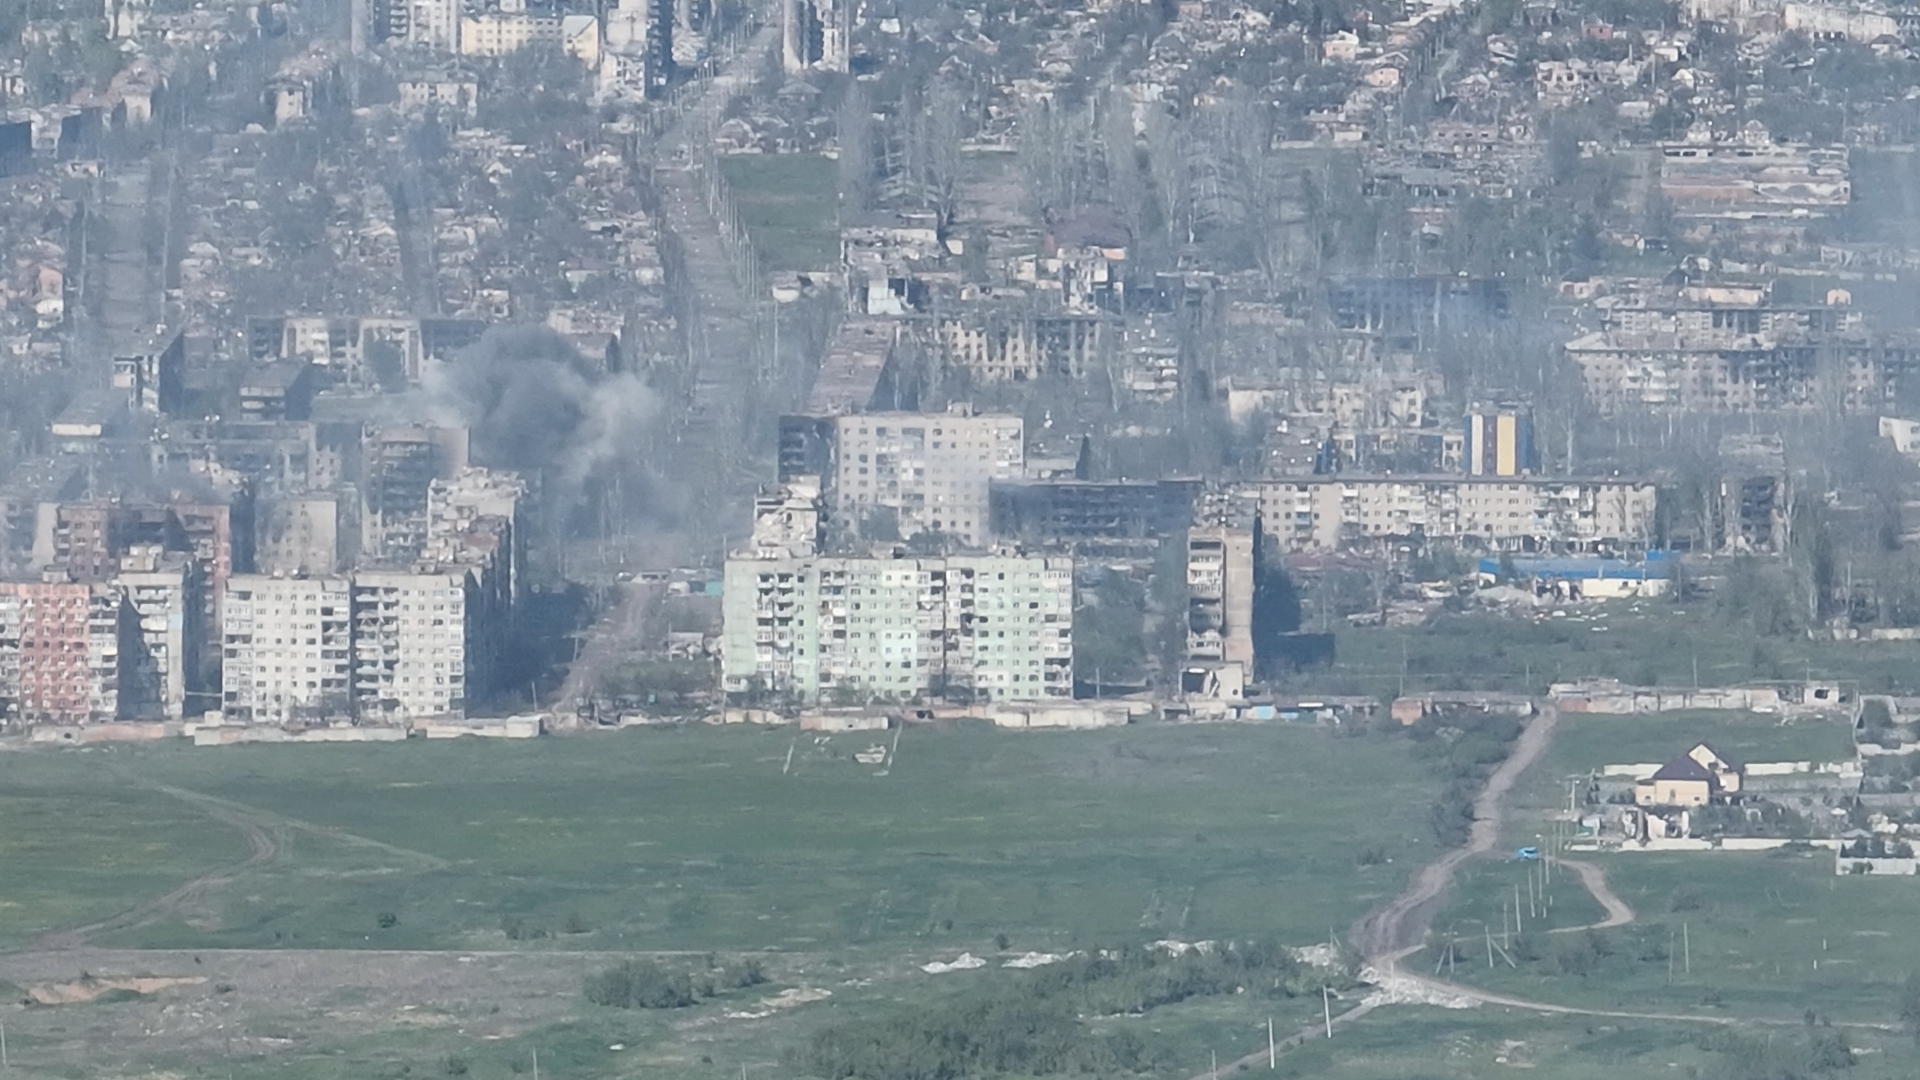 Das von der ukrainischen Armee herausgegebene Foto zeigt zerstörte Wohnblocks in Bachmut, Rauch steigt auf. (Archivbild aus dem Mai 2023)